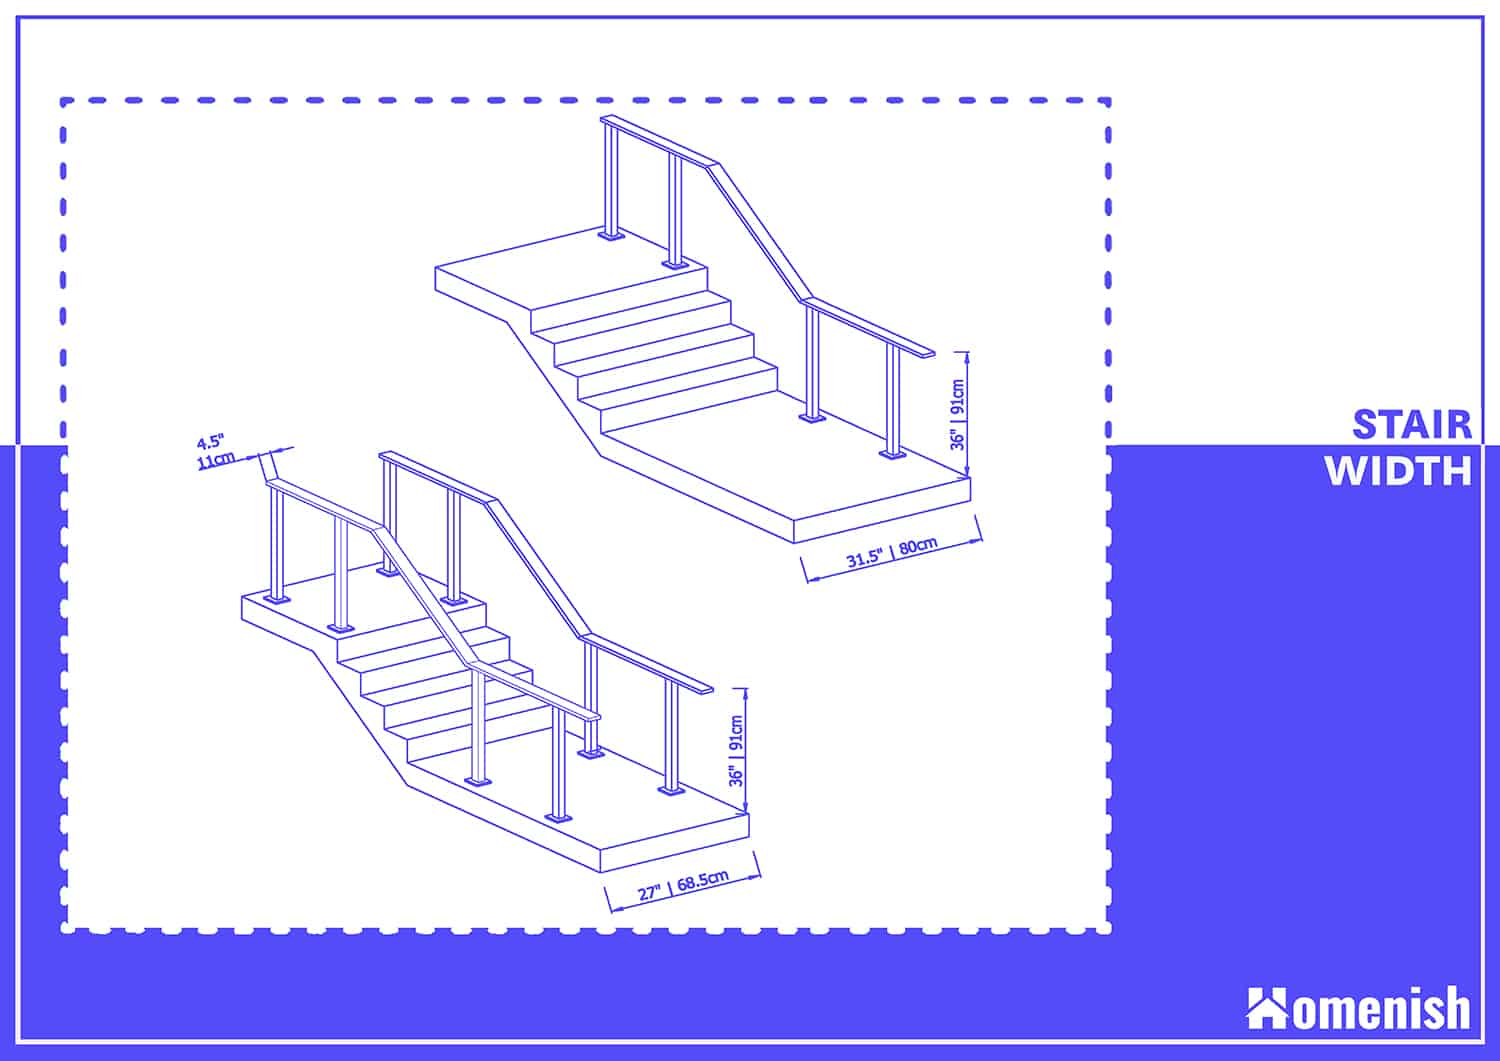 Standard Stair Width Diagram